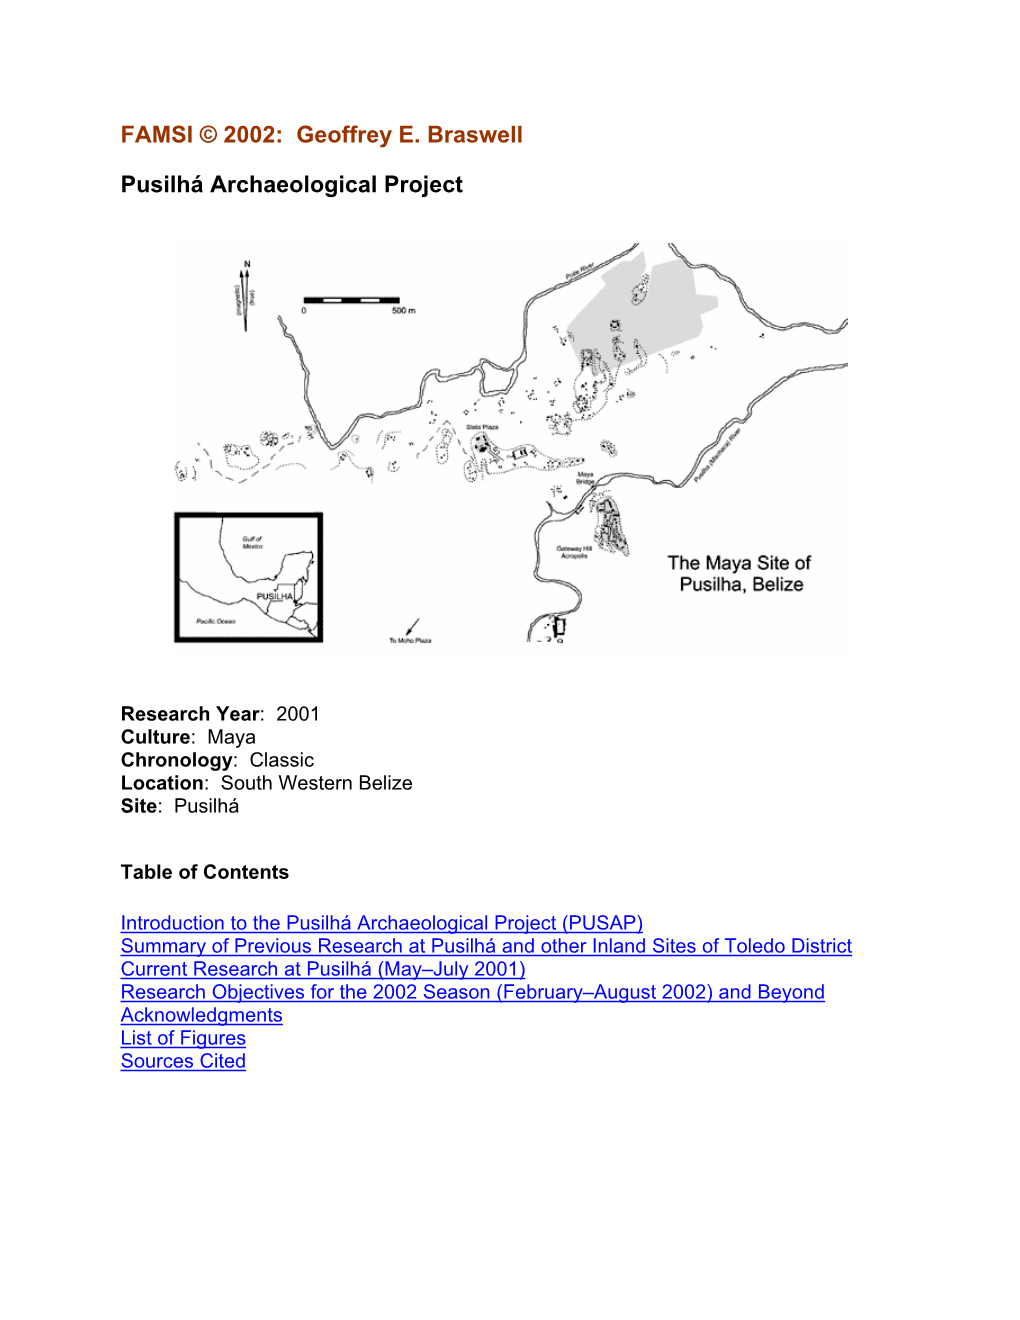 Pusilhá Archaeological Project